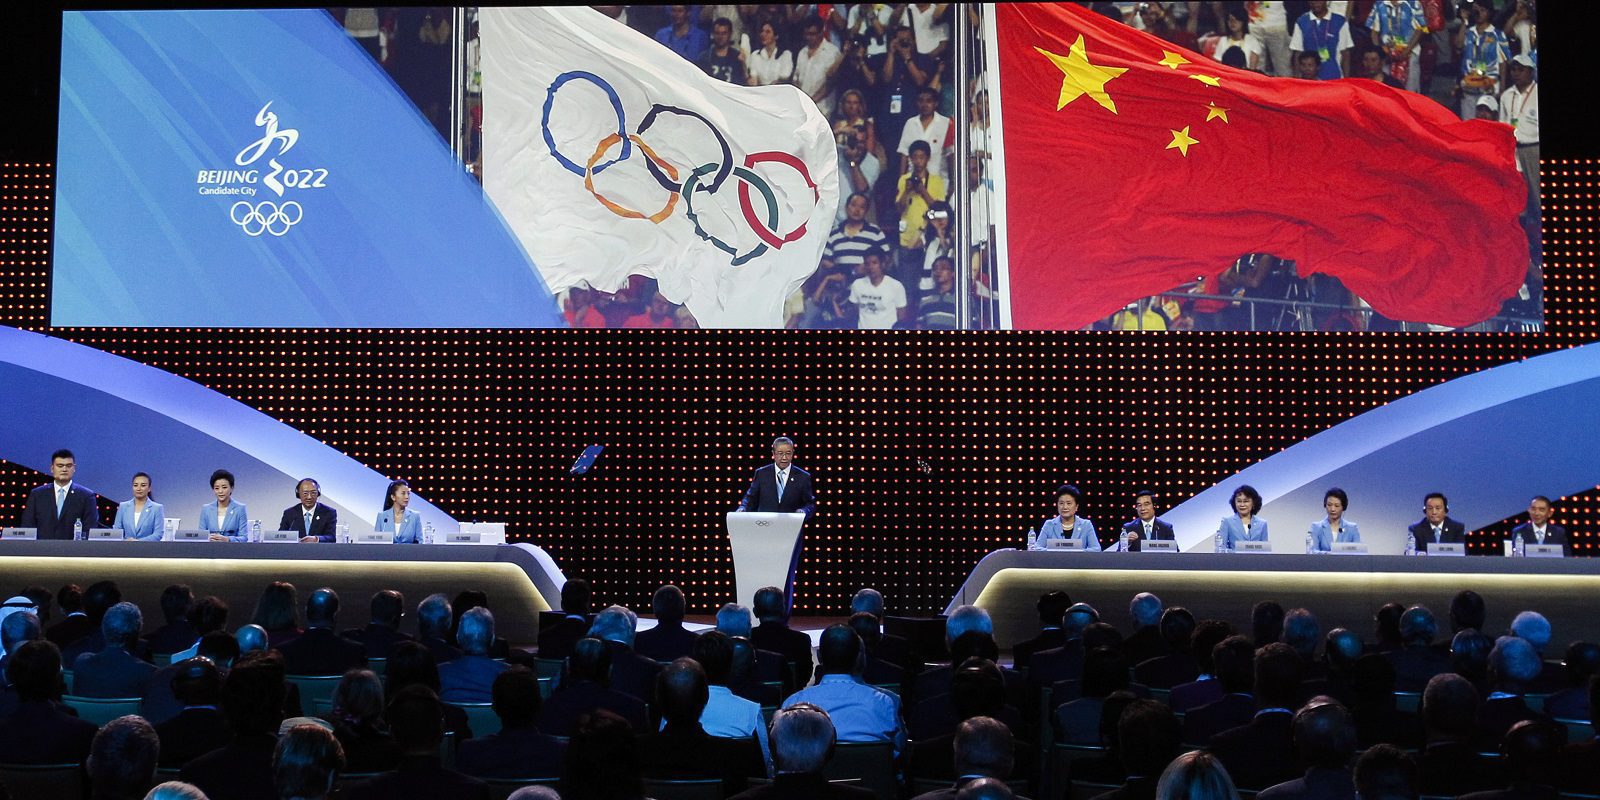 Los eSports serán deporte oficial en los Juegos Olímpicos de Invierno de 2022